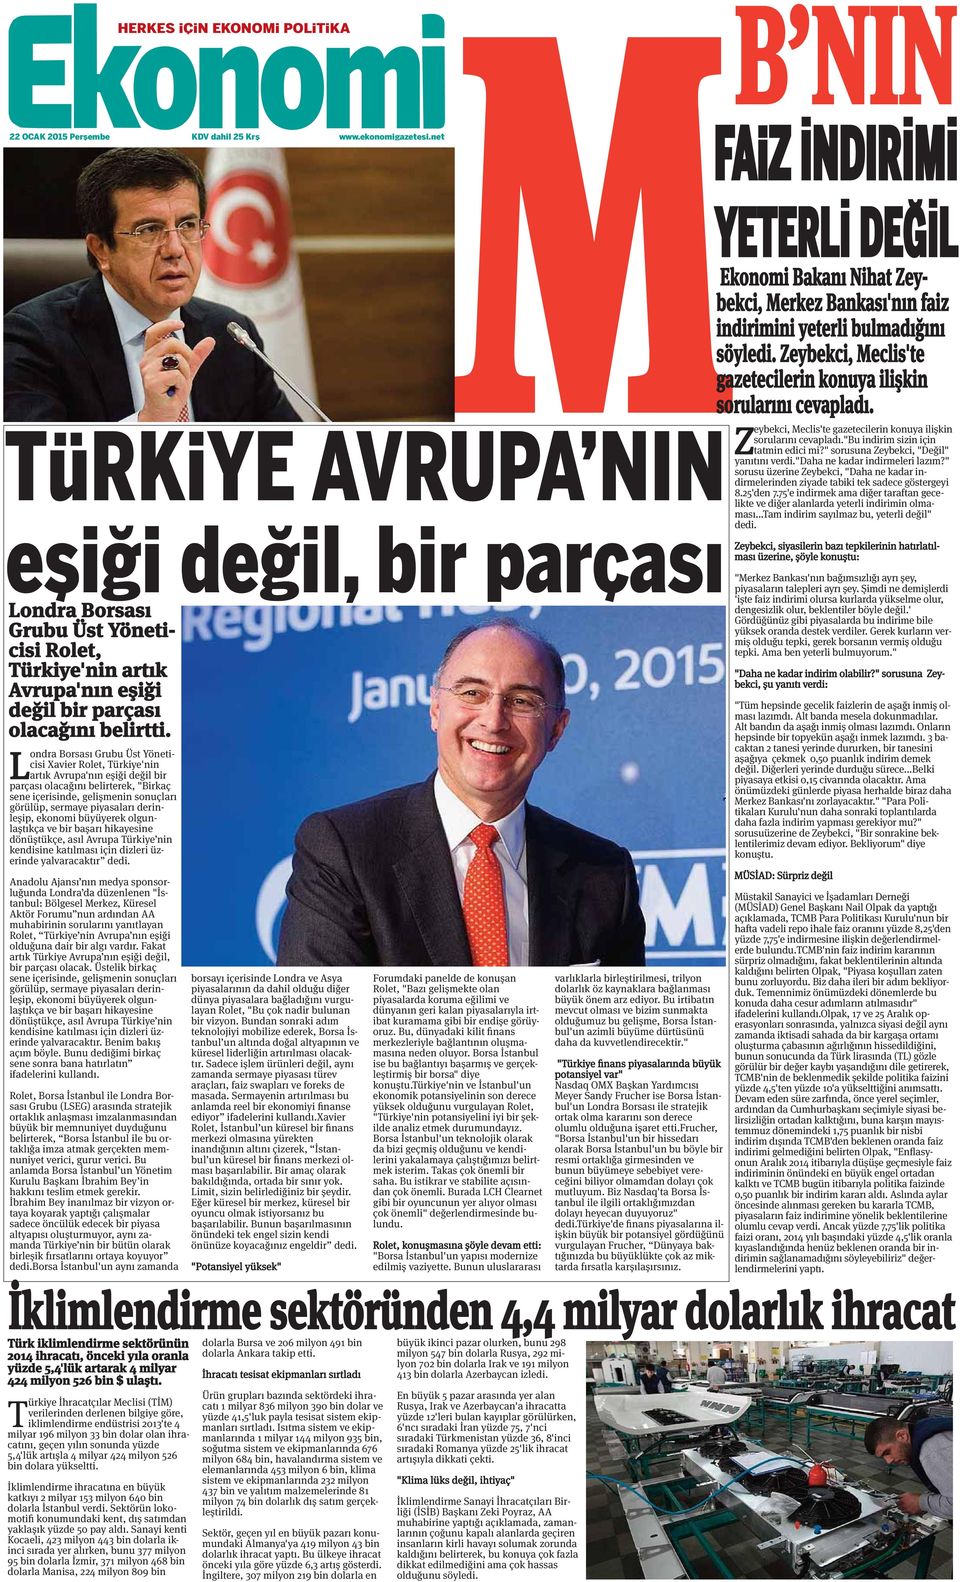 L ondra Borsası Grubu Üst Yöneticisi Xavier Rolet, Türkiye'nin artık Avrupa'nın eşiği değil bir parçası olacağını belirterek, "Birkaç sene içerisinde, gelişmenin sonuçları görülüp, sermaye piyasaları